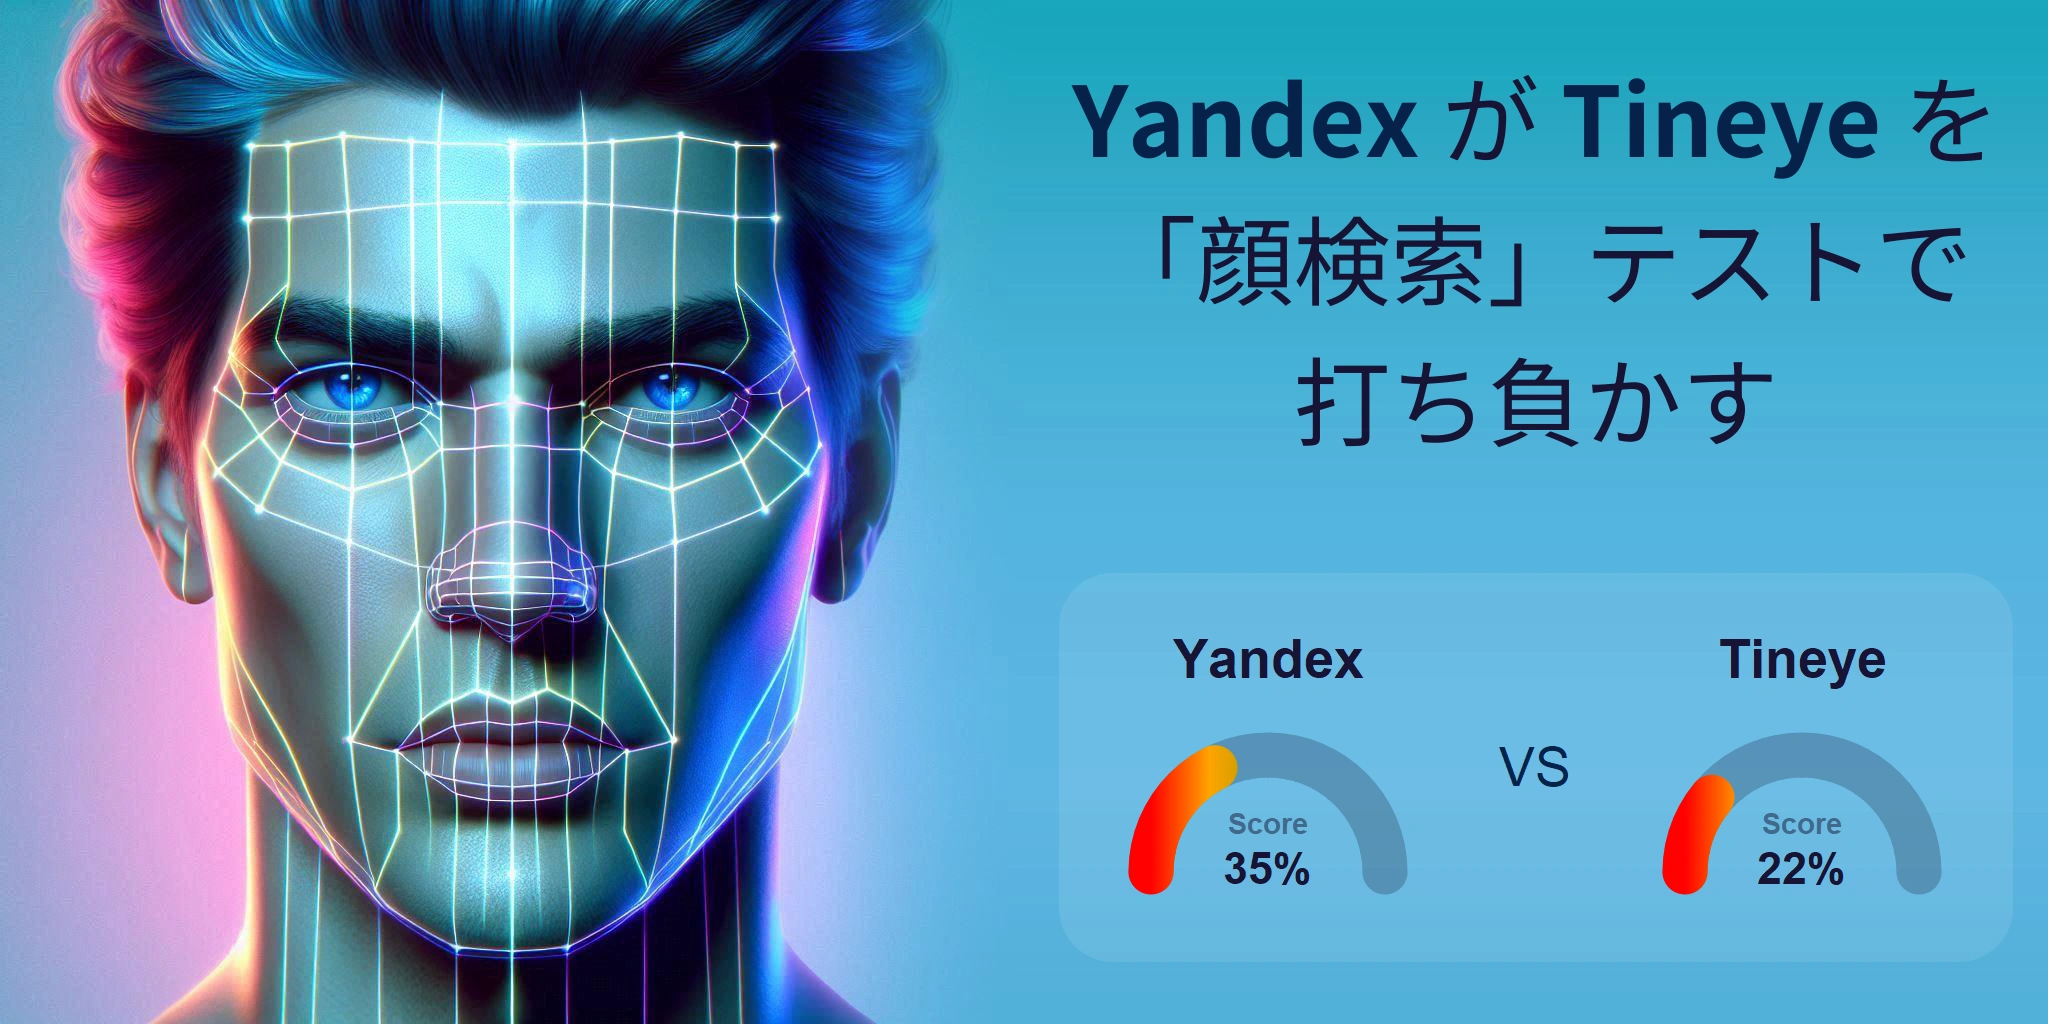 顔検索に最適なのはどちら？：Tineye か Yandex?